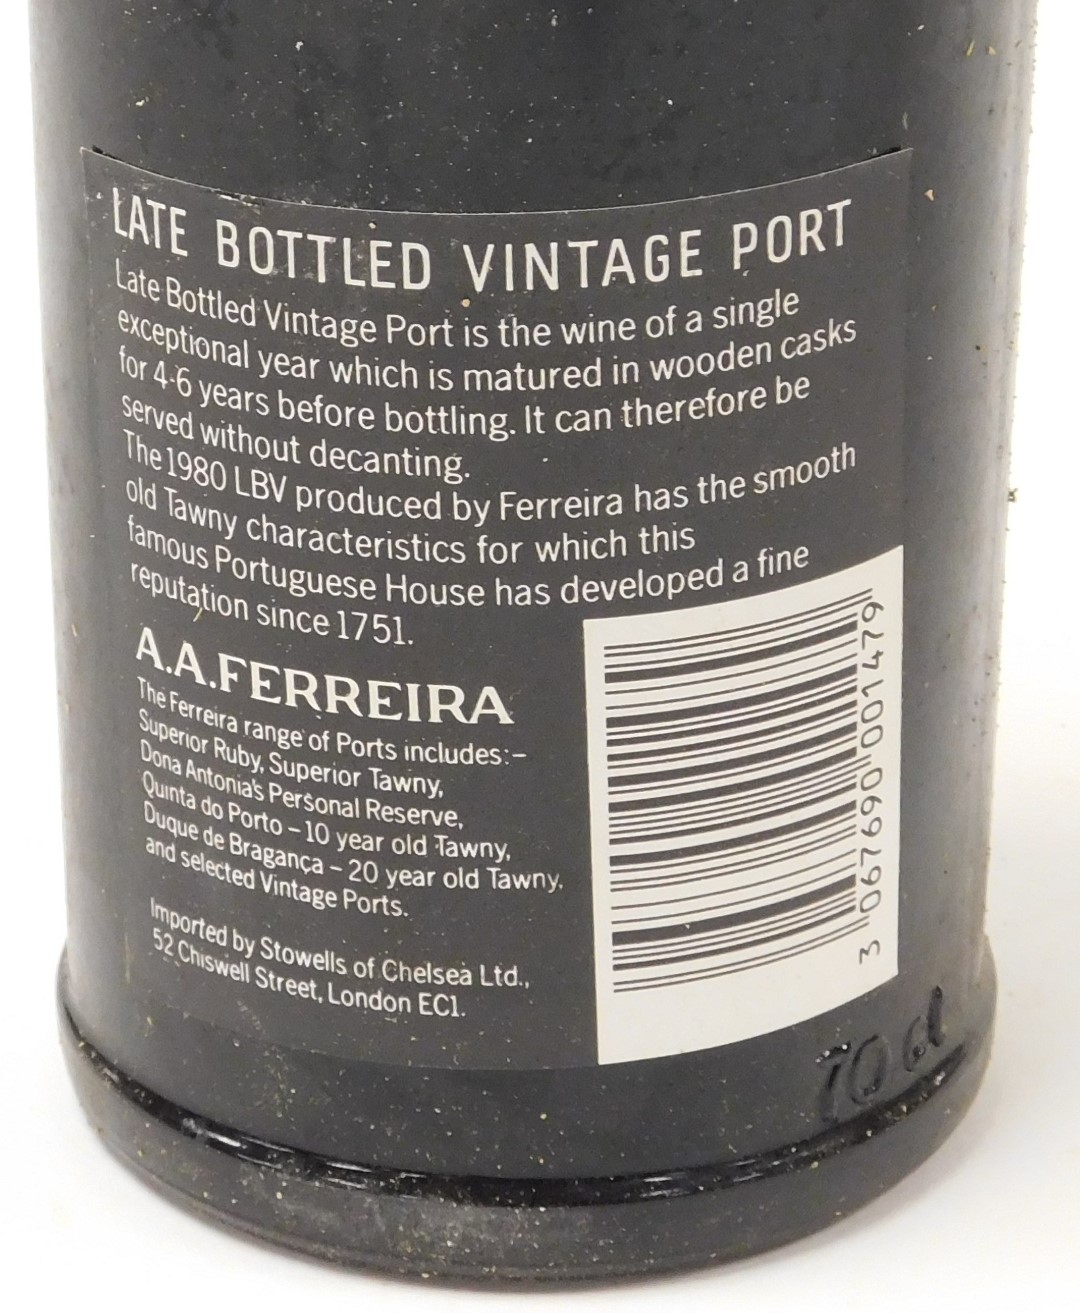 A bottle of Ferreira late bottled vintage port 1980, cased. - Image 3 of 4